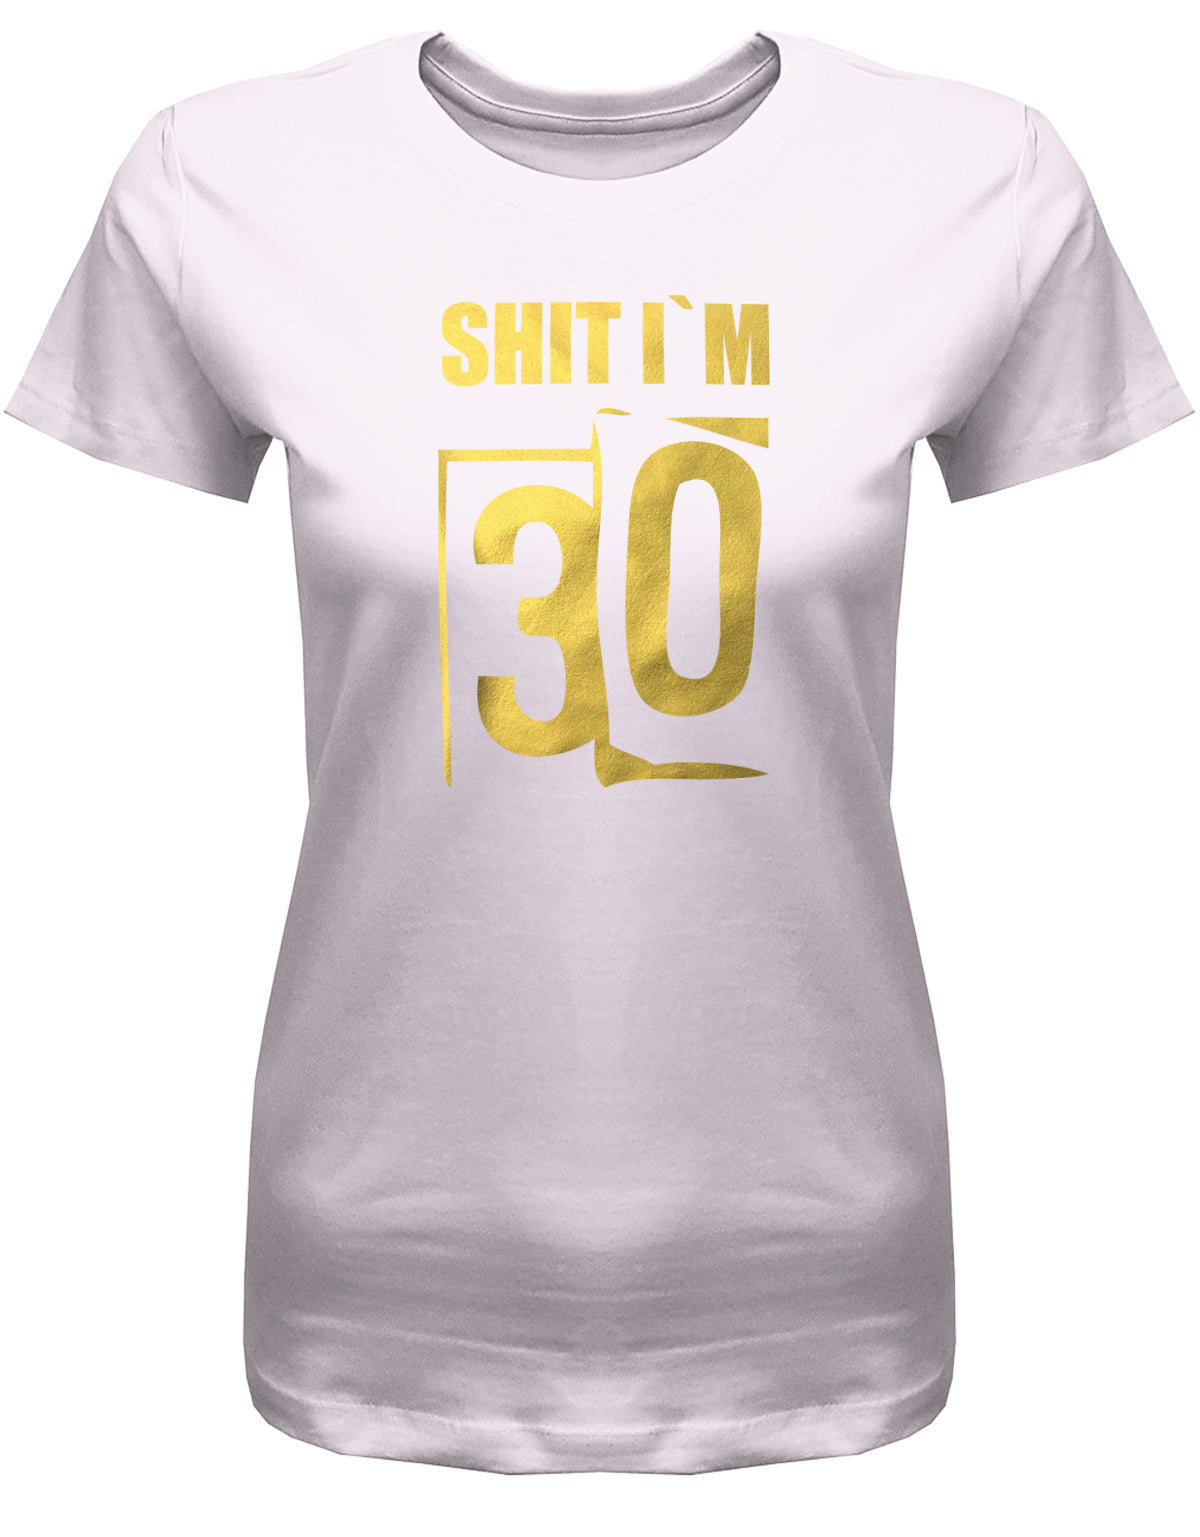 Lustiges T-Shirt zum 30. Geburtstag für die Frau Bedruckt mit: Shit i´m 30. Scheisse ich bin 30. Geschenk zum 30 geburtstag Frau ✓ 1993 geburtstag Frau ✓ 30 Geburtstag tshirt ✓ shirt geburtstag 30 Rosa